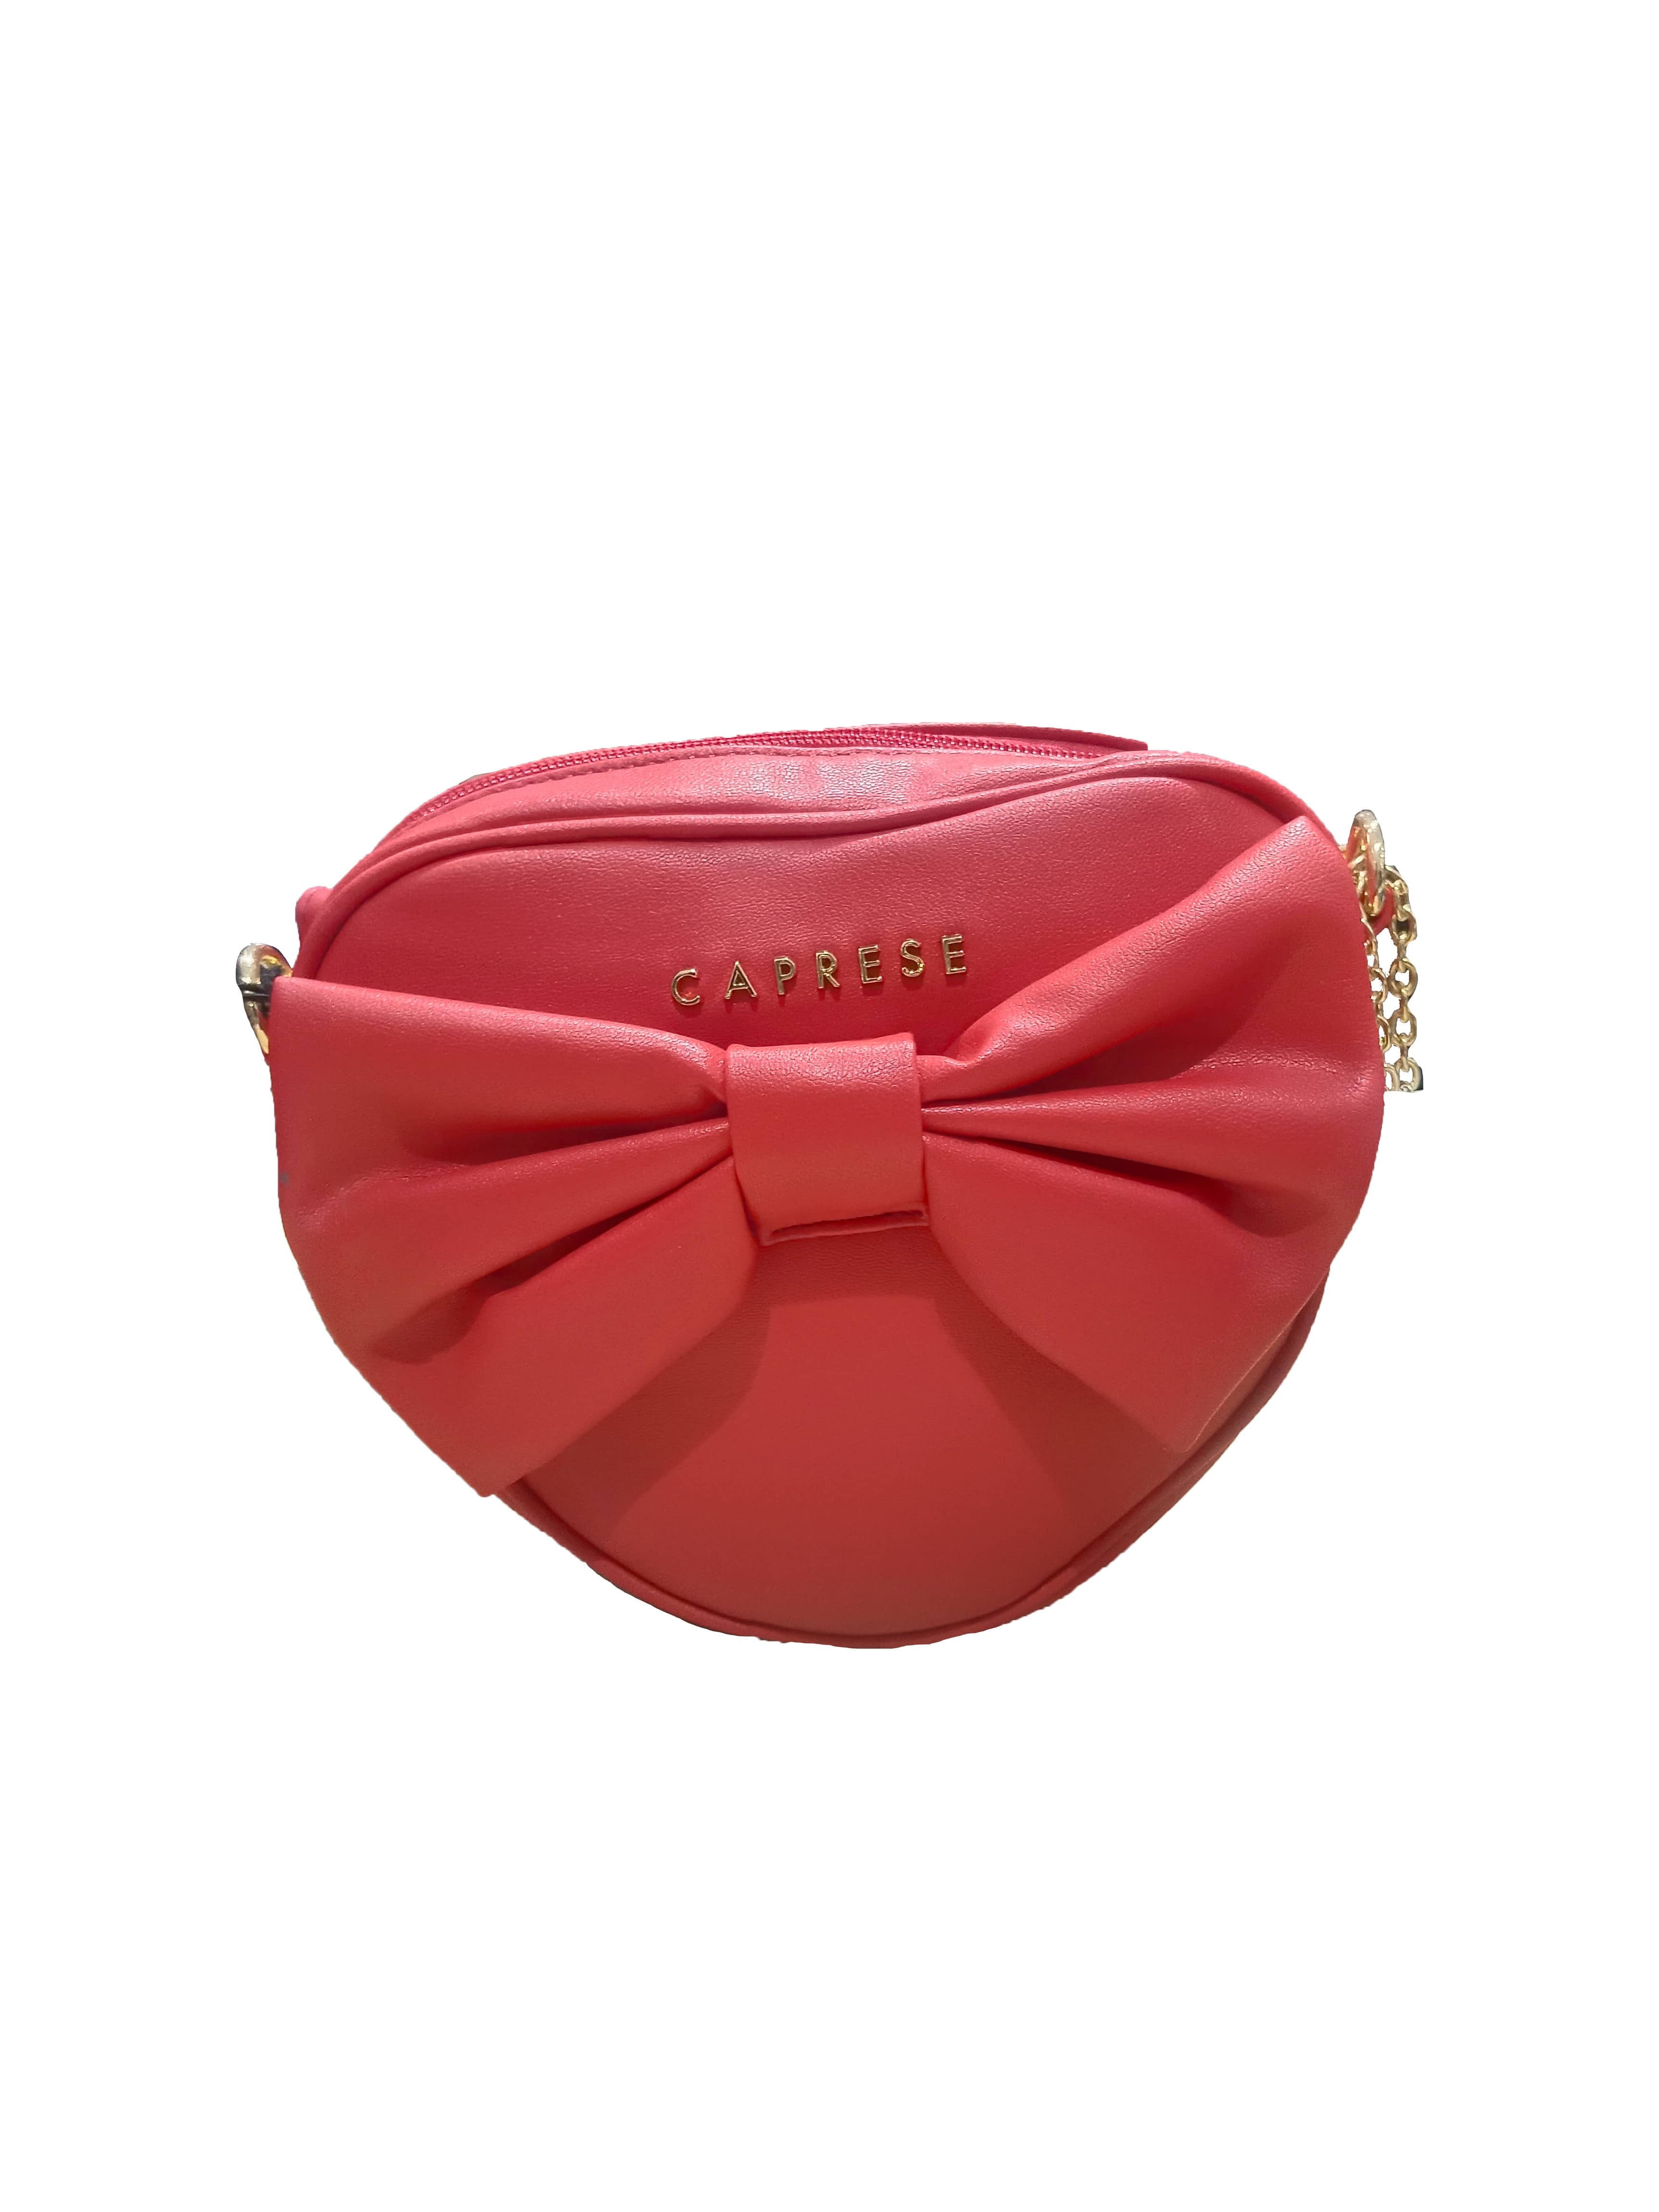 Melie Bianco Designer Purse Red Shoulder Bag Gold Zipper Hardware MSRP $119  | eBay